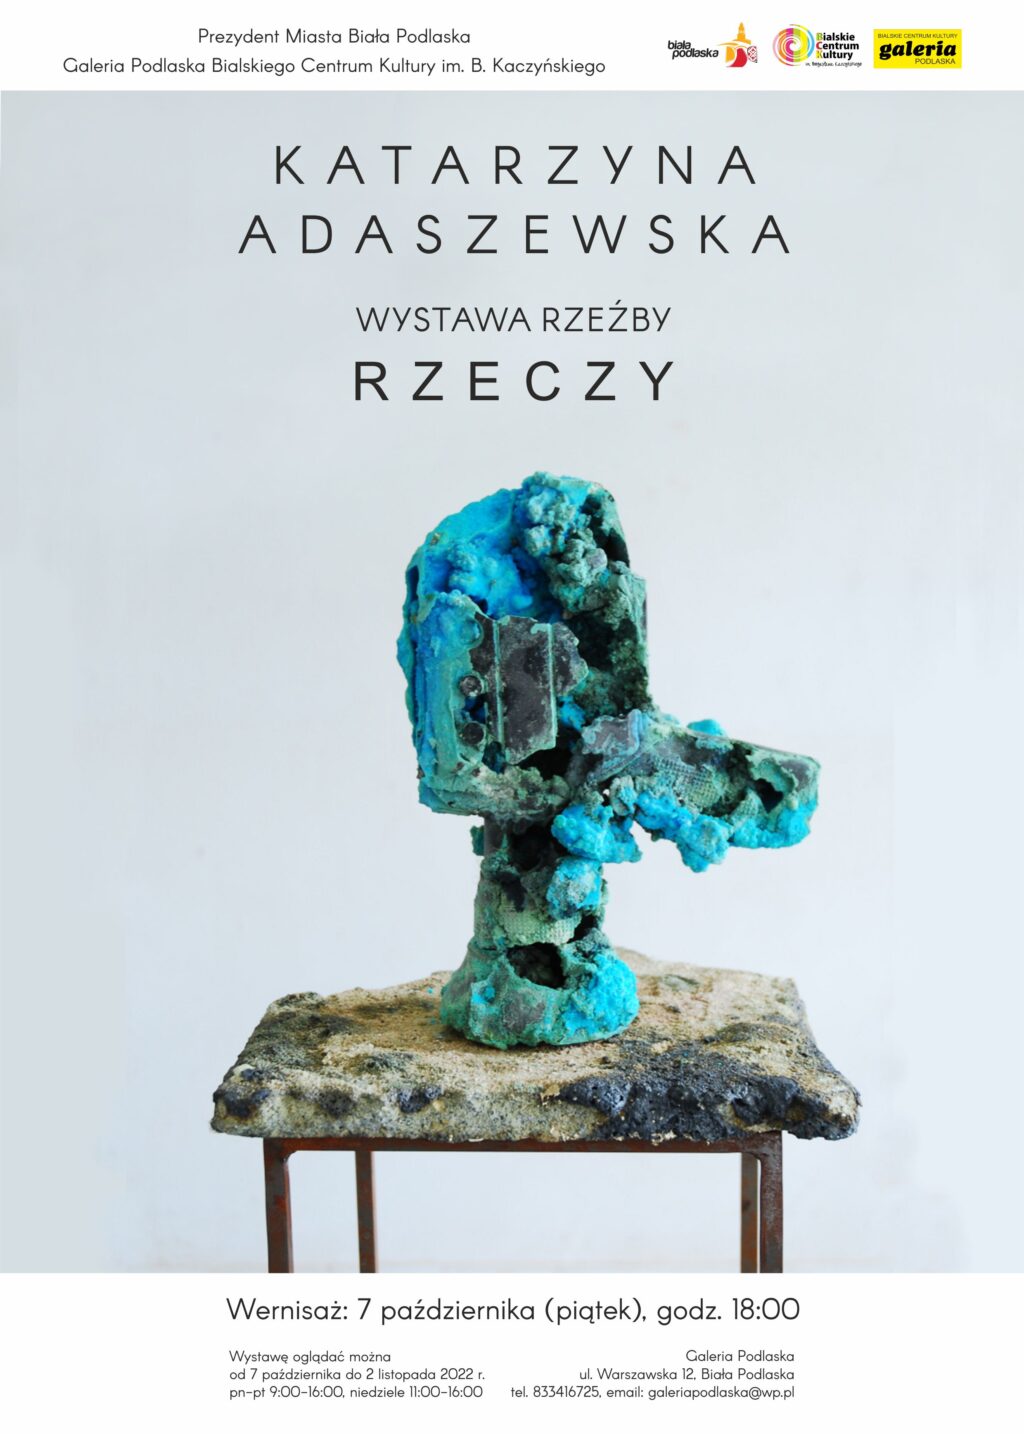 Wystawa rzeźby “Rzeczy/Nierzeczy” Katarzyny Adaszewskiej